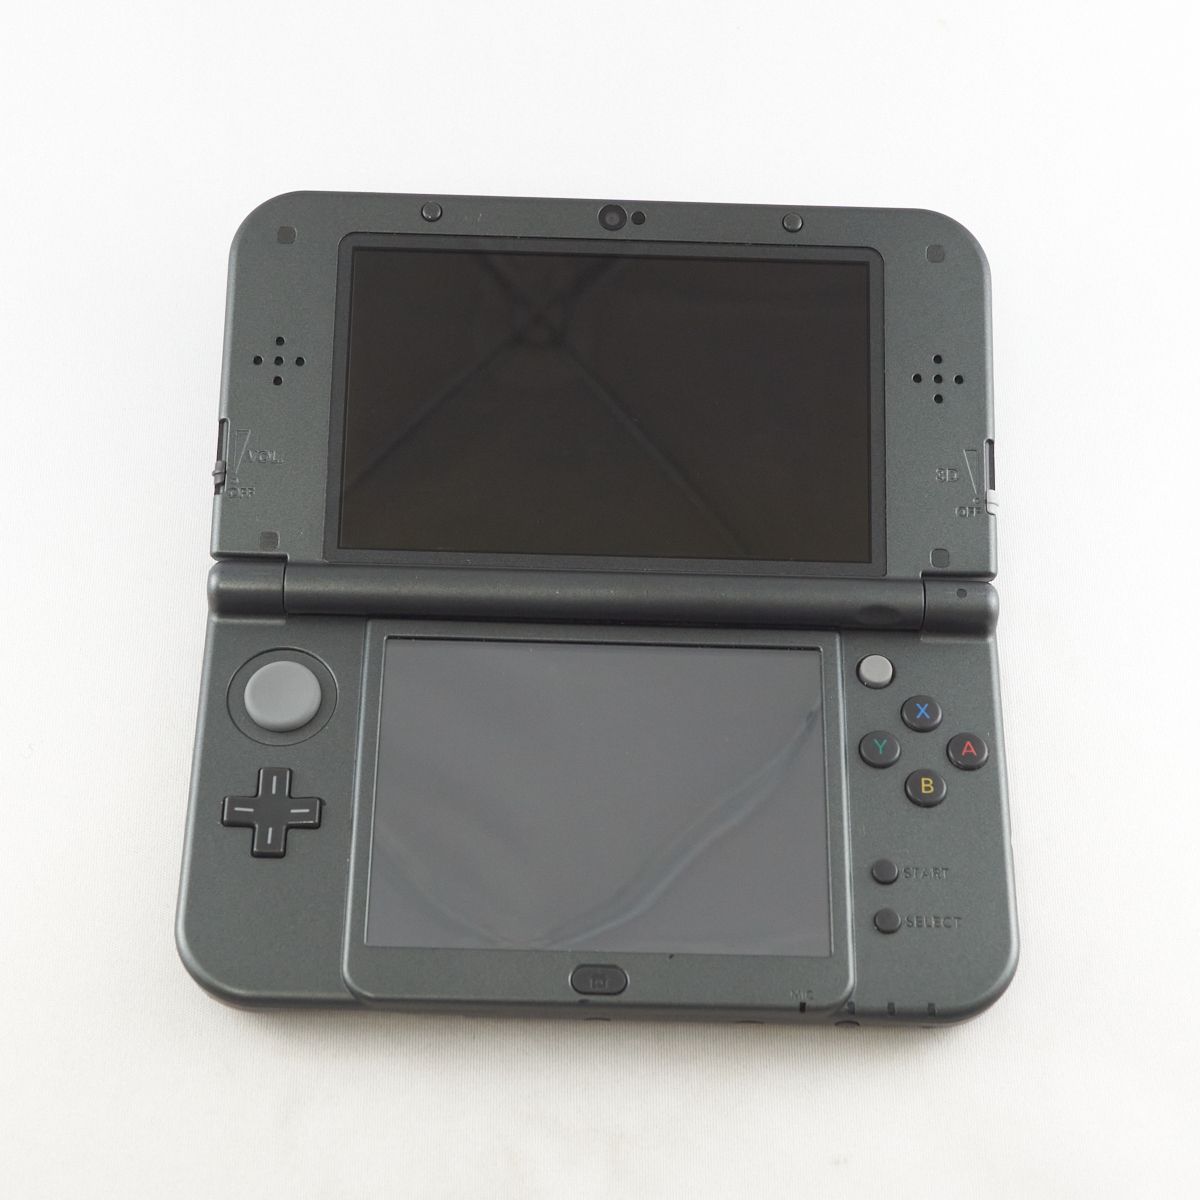 任天堂 New Nintendo 3DS LL USED品 本体のみ RED-001 携帯用ゲーム機 